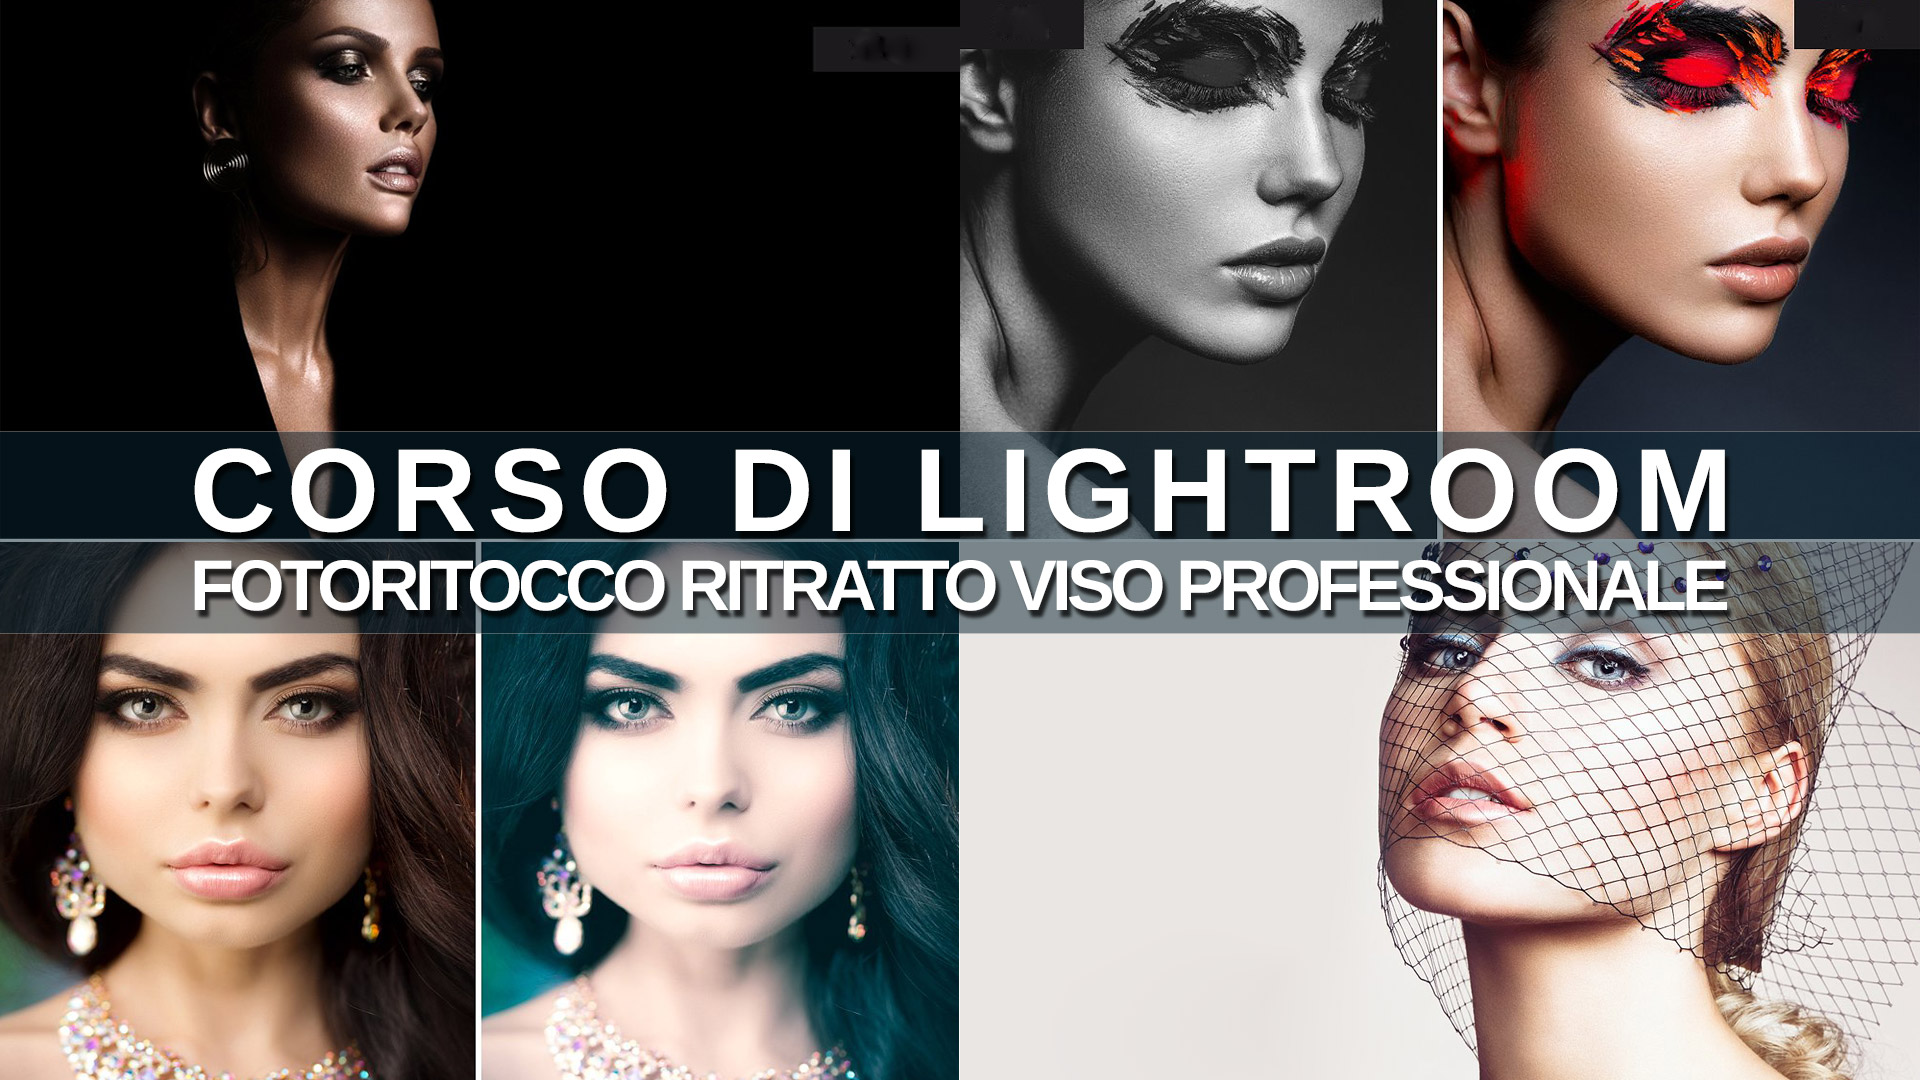 Corso-Lightroom-Corso-di-Adobe-Lightroom-Completo-by-Alberto-Still_fotoritocco-ritratto-viso-professionale